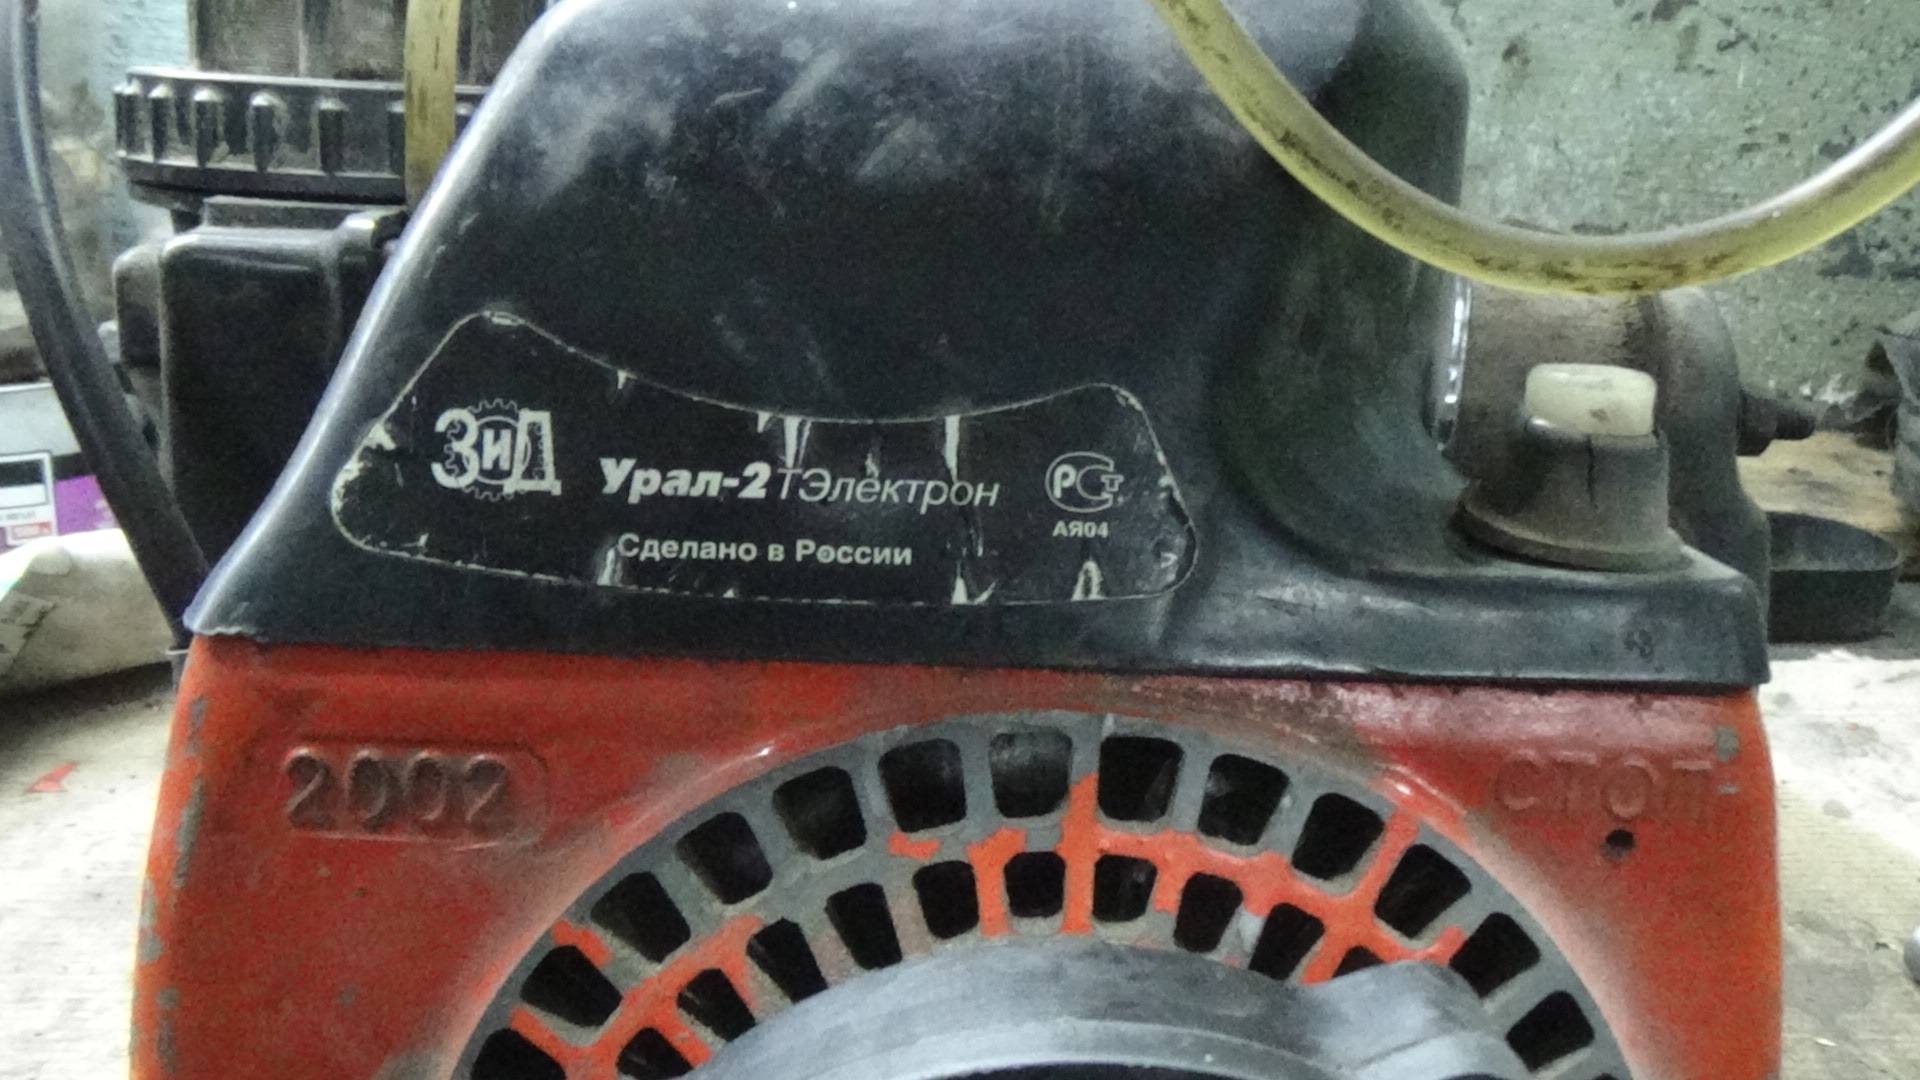 Бензопила урал 2т электрон не заводится • evdiral.ru